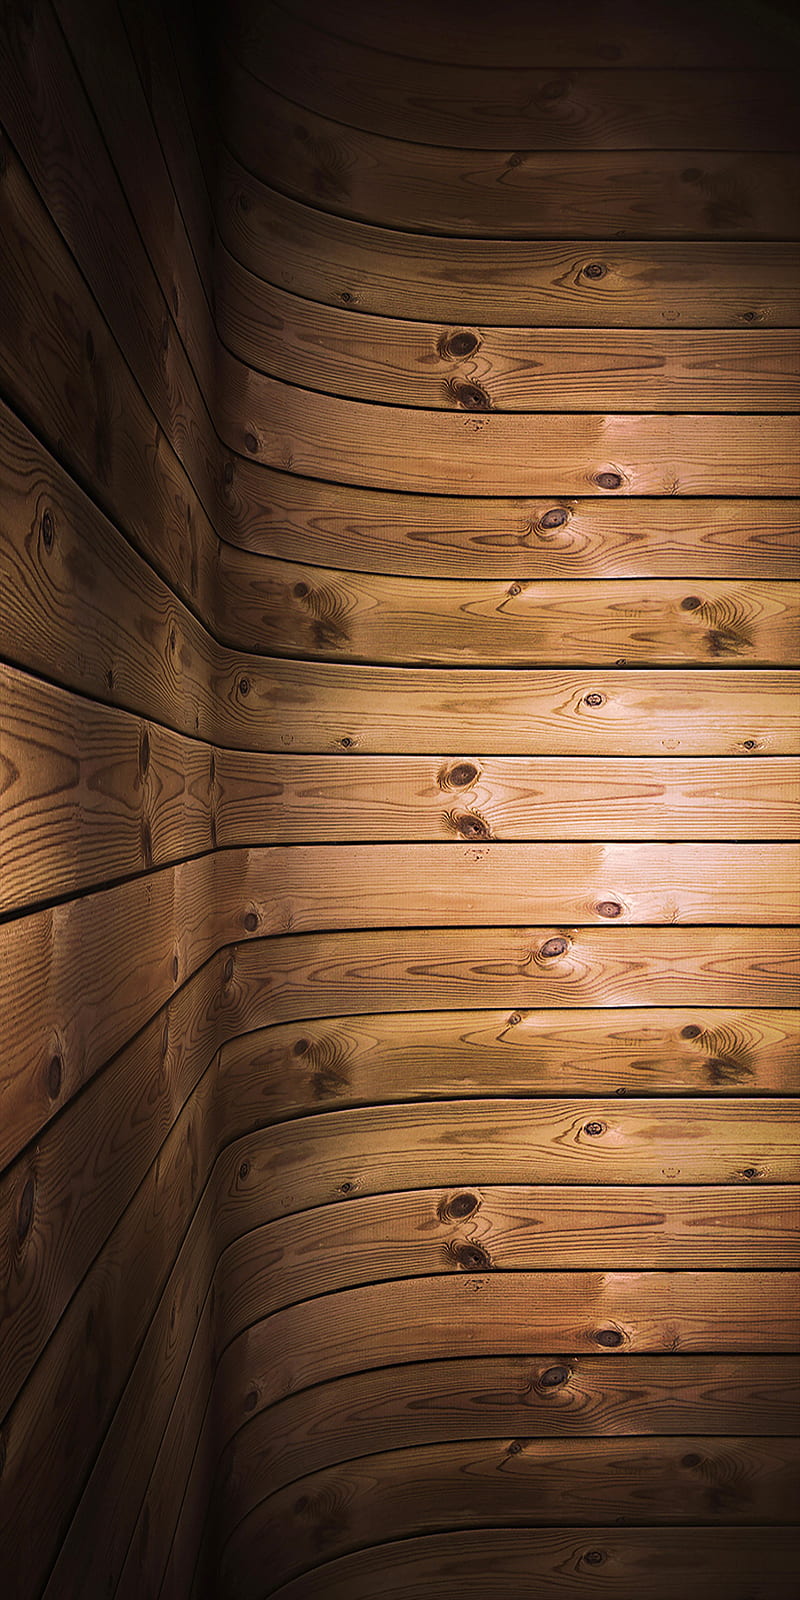 Bạn đang tìm kiếm một mô hình sàn đẹp mắt và phù hợp với phong cách trang trí nhà của mình? Đừng bỏ qua mẫu bản vẽ về tường gỗ với chất liệu gỗ đầy sang trọng và tinh tế này. Ngoài ra, điện thoại HD của bạn cũng sẽ trở nên thật nổi bật khi được làm nền cho hình ảnh về phông nền tường gỗ này.